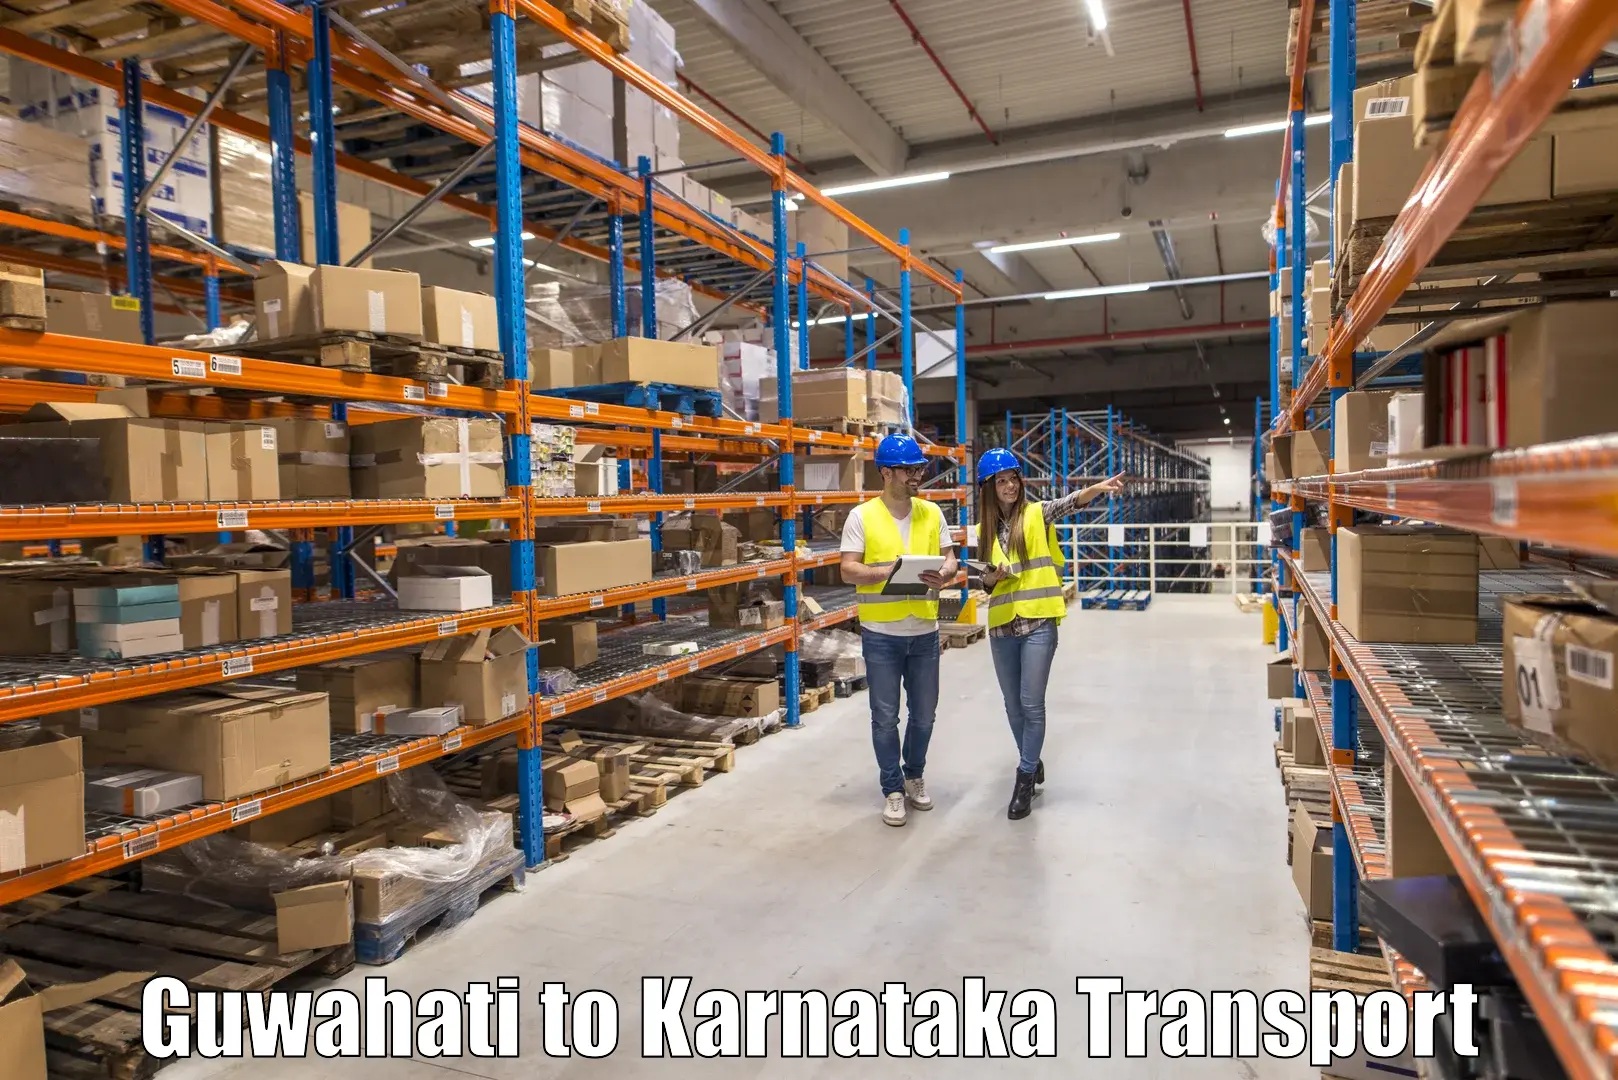 Truck transport companies in India Guwahati to Toranagallu